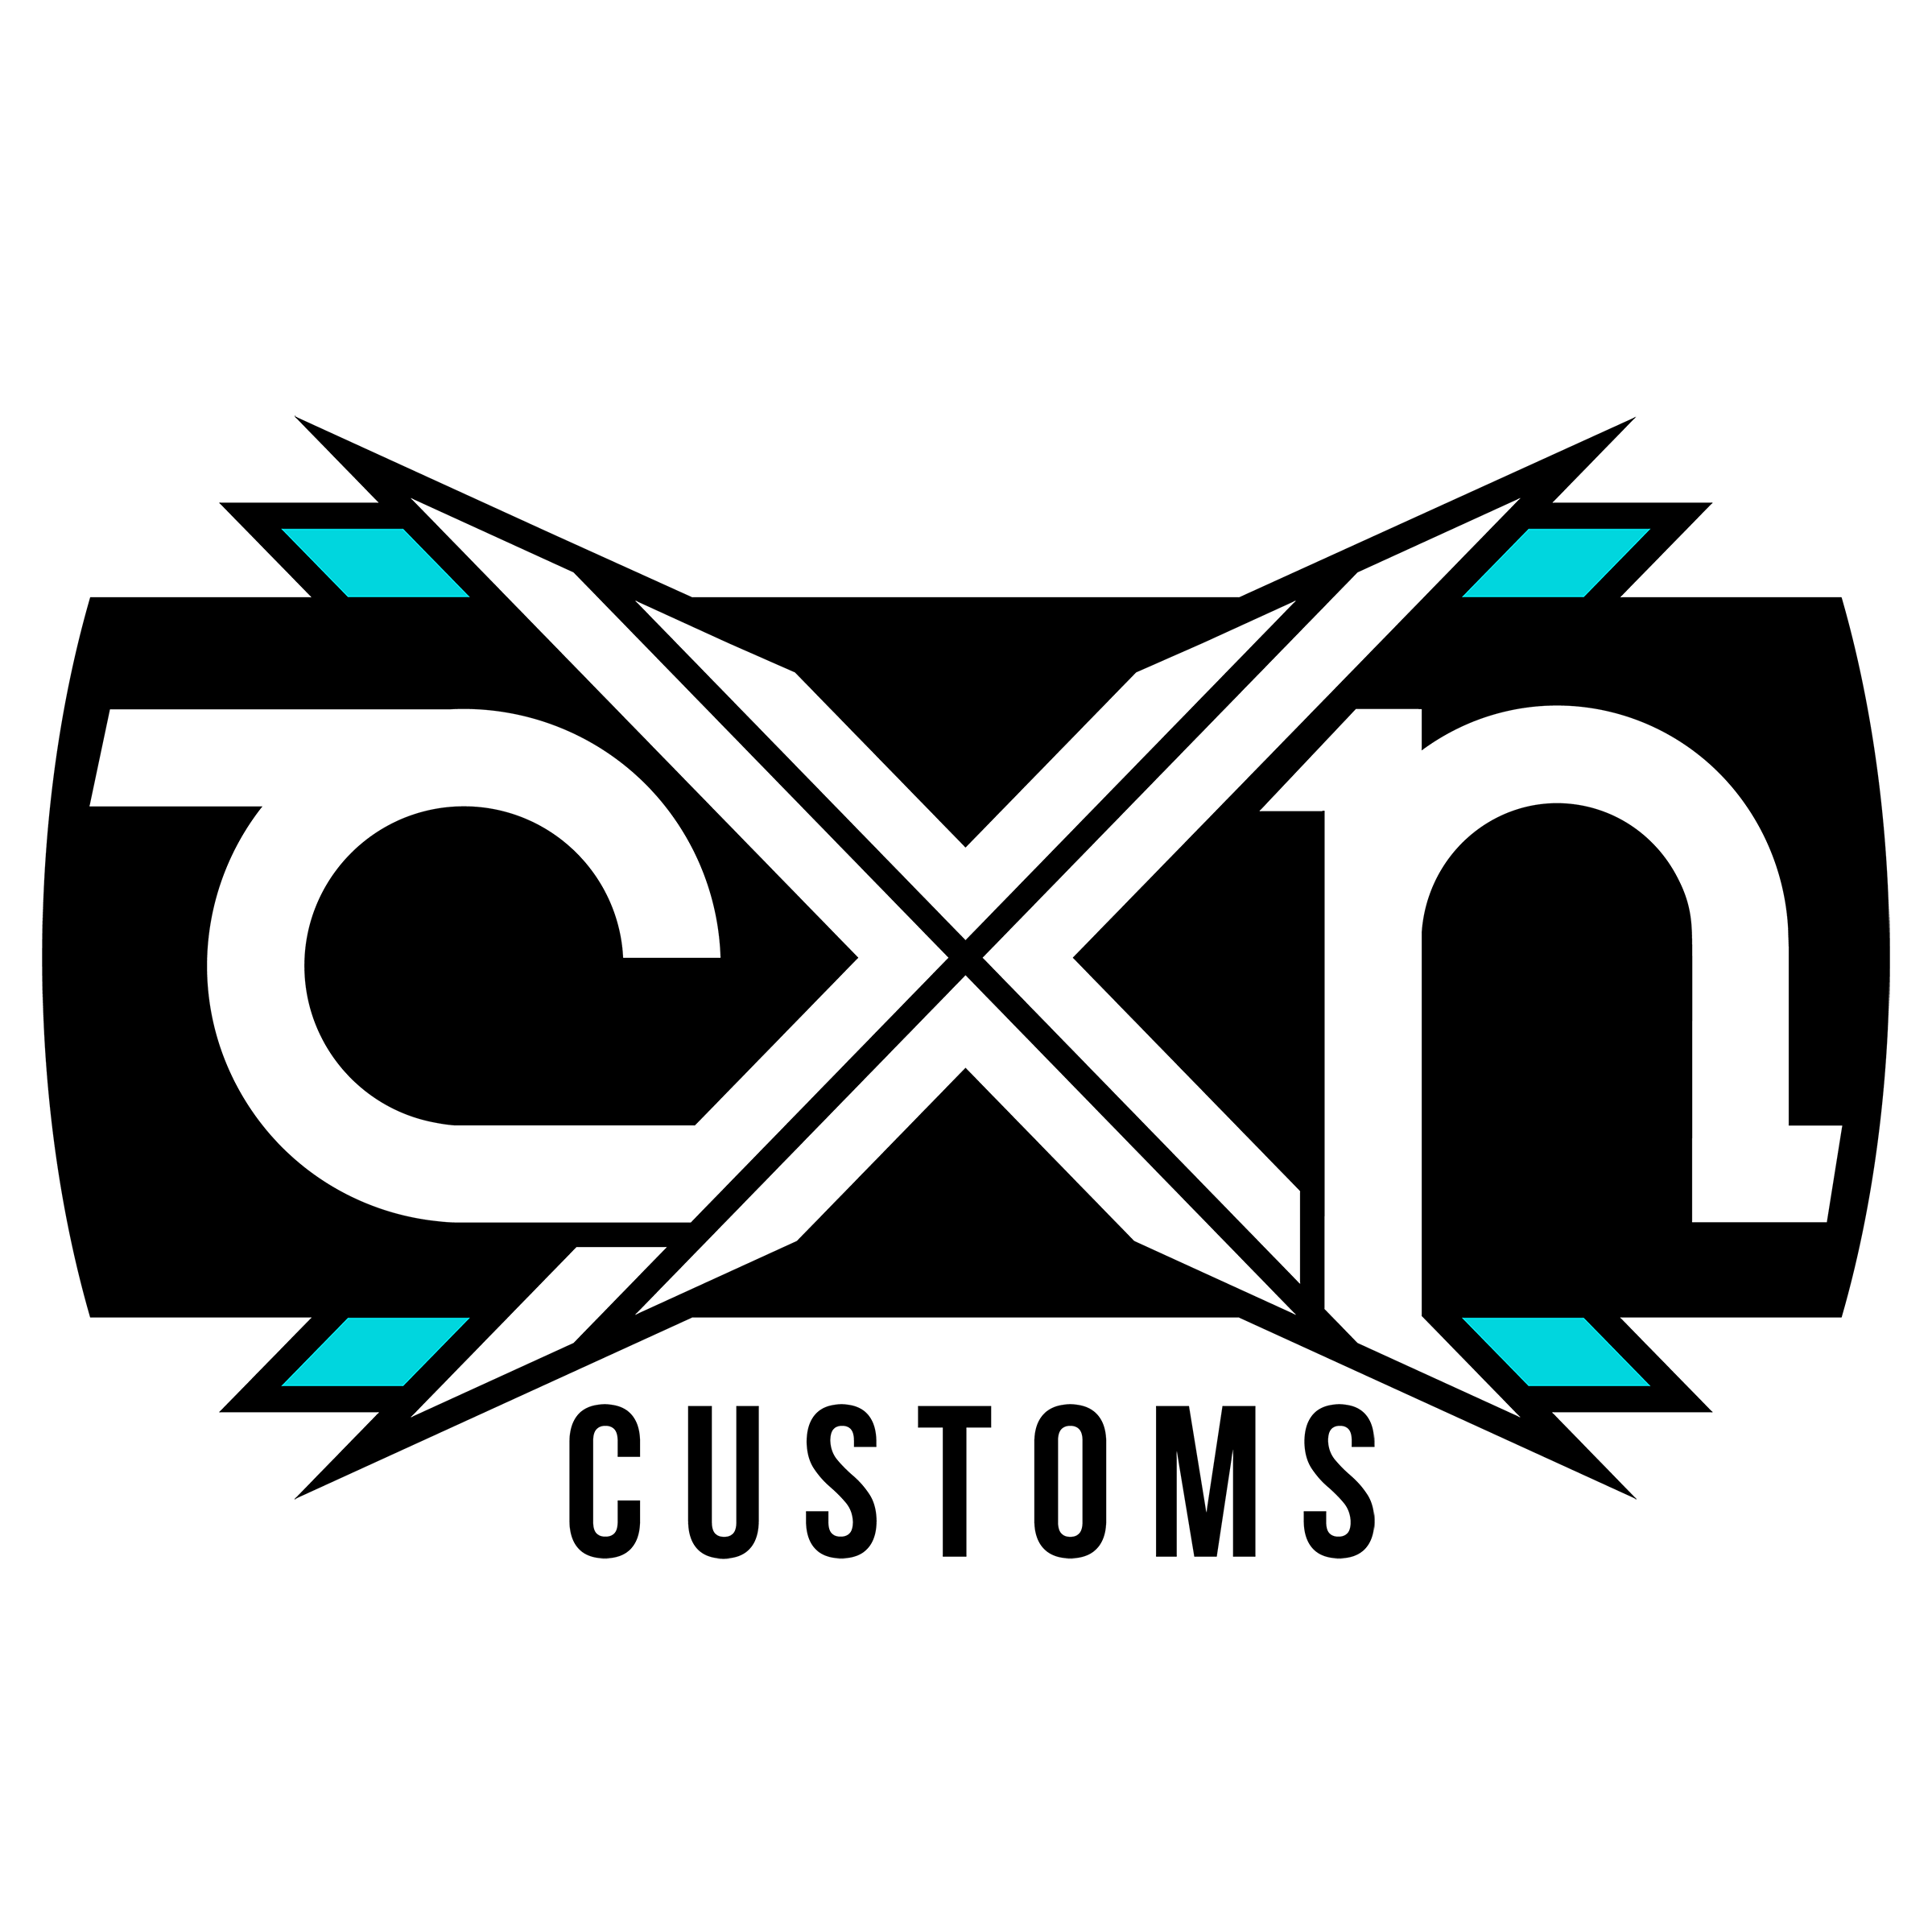 CXN Customs Canoga Park (818)912-6369